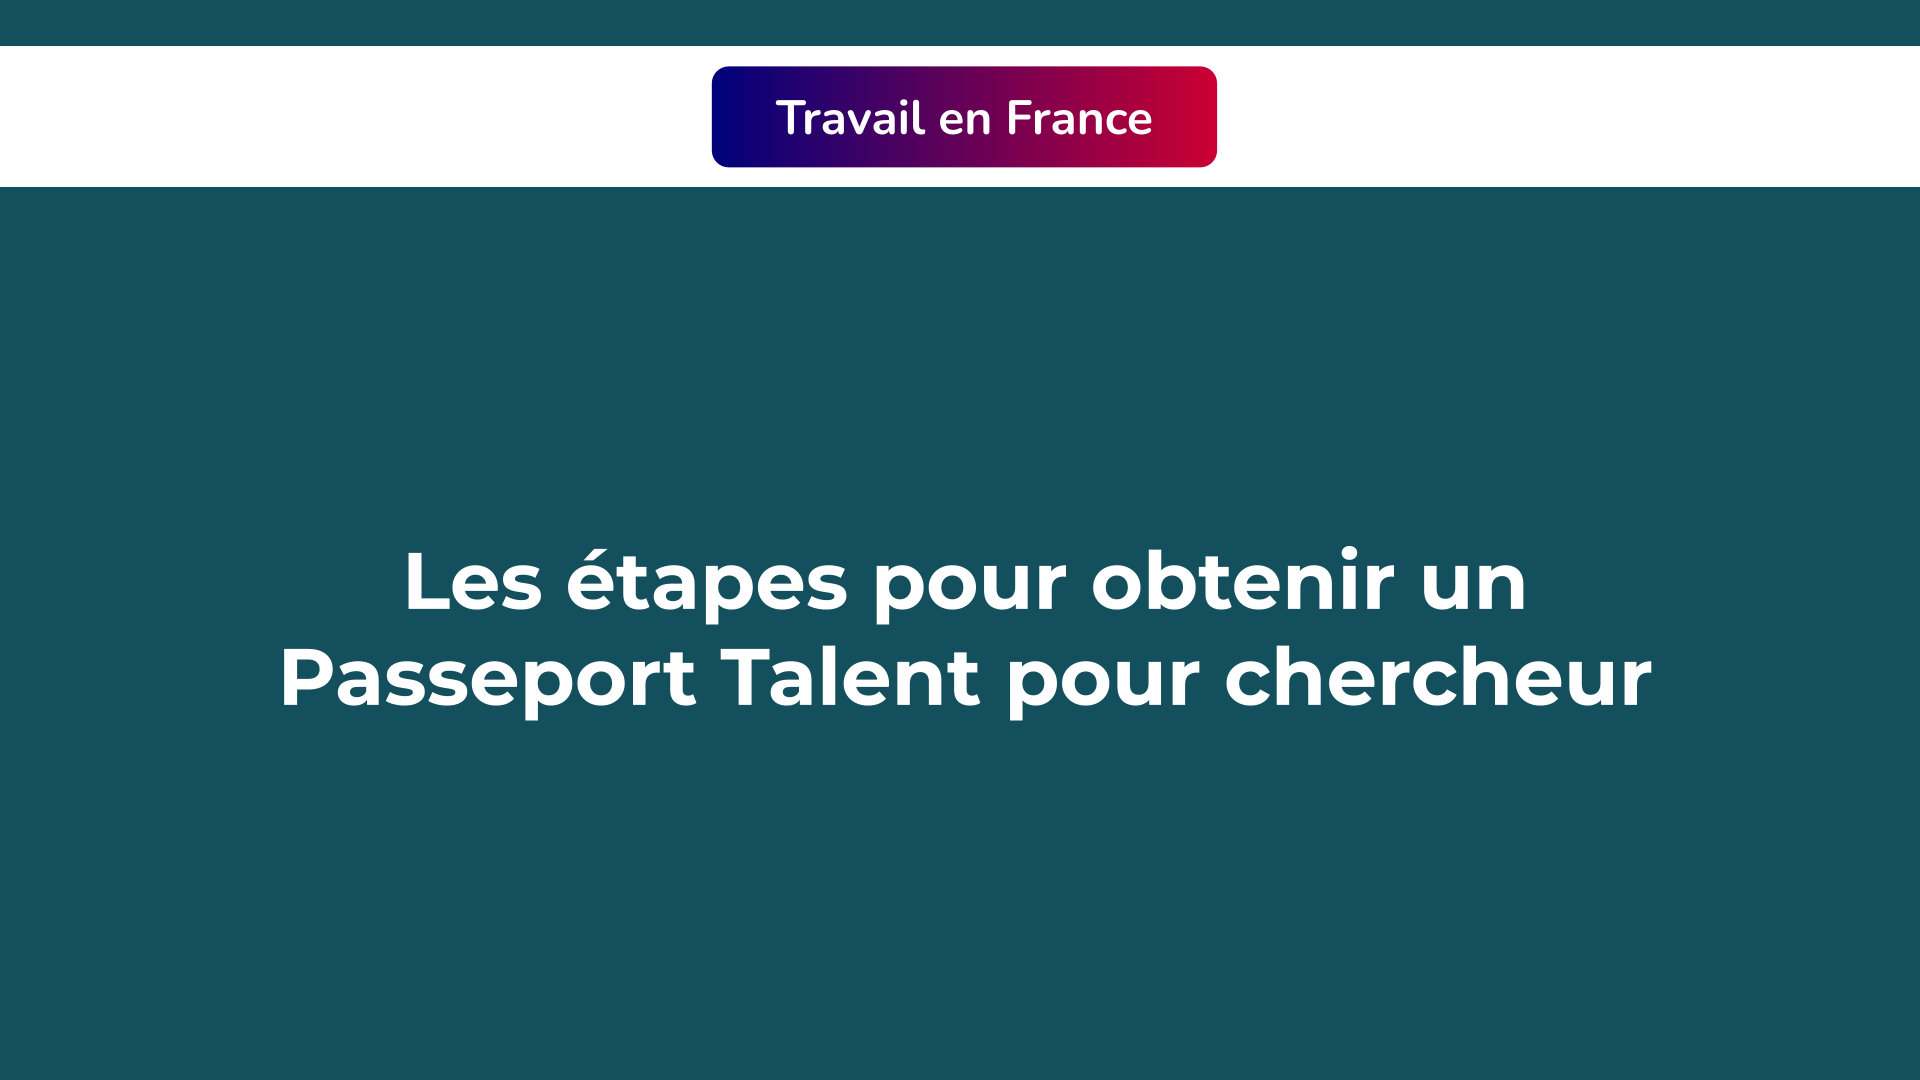 Passeport Talent pour chercheur